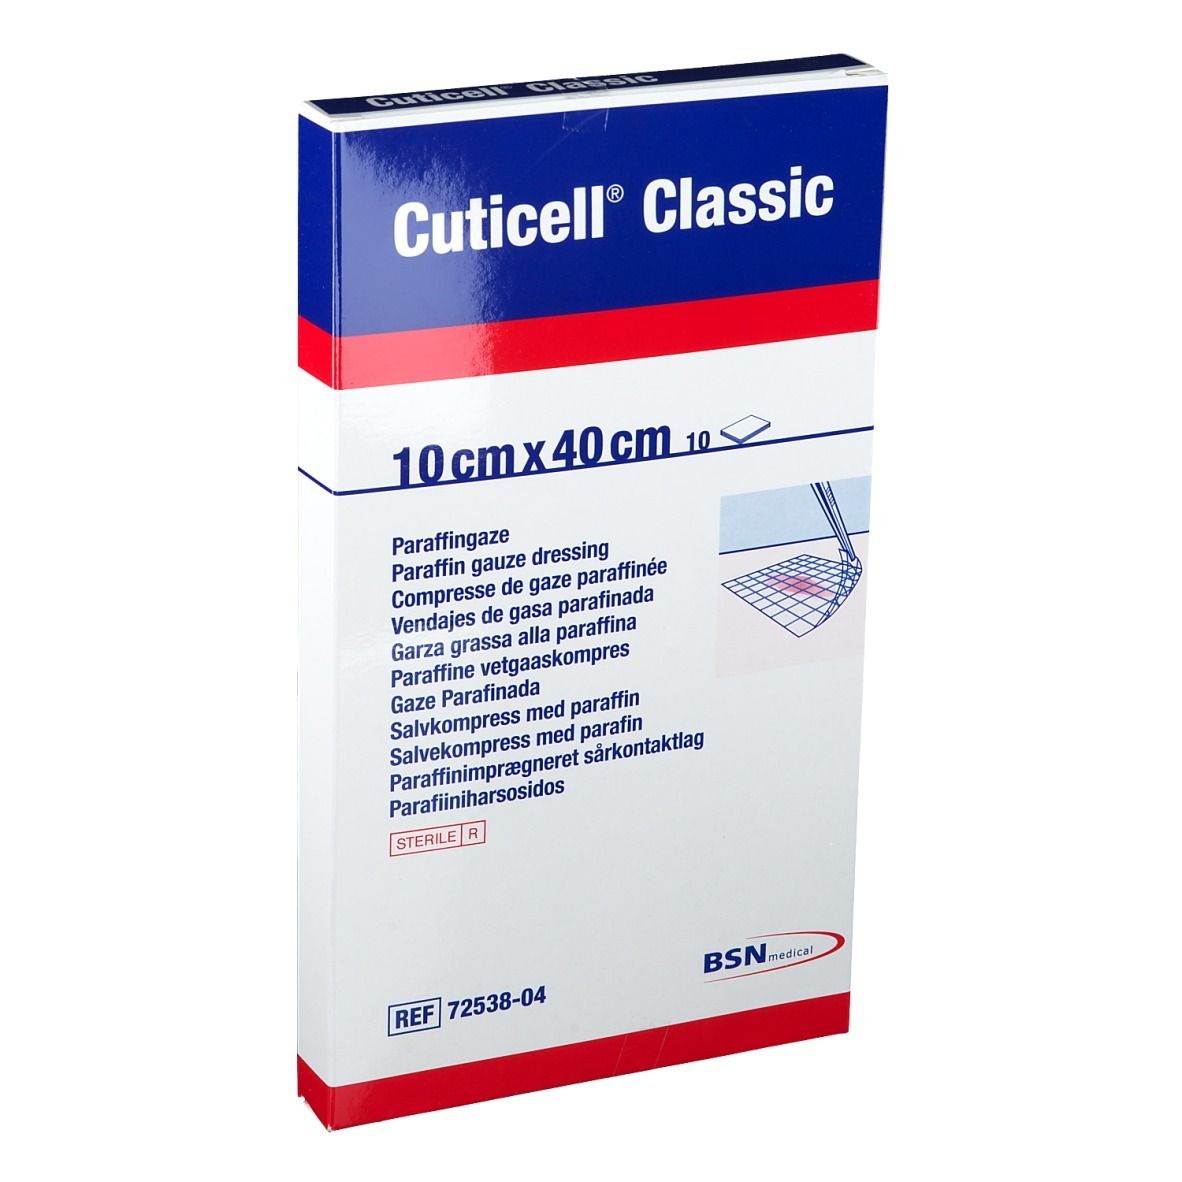 Cuticell® Classic 10 cm x 40 cm